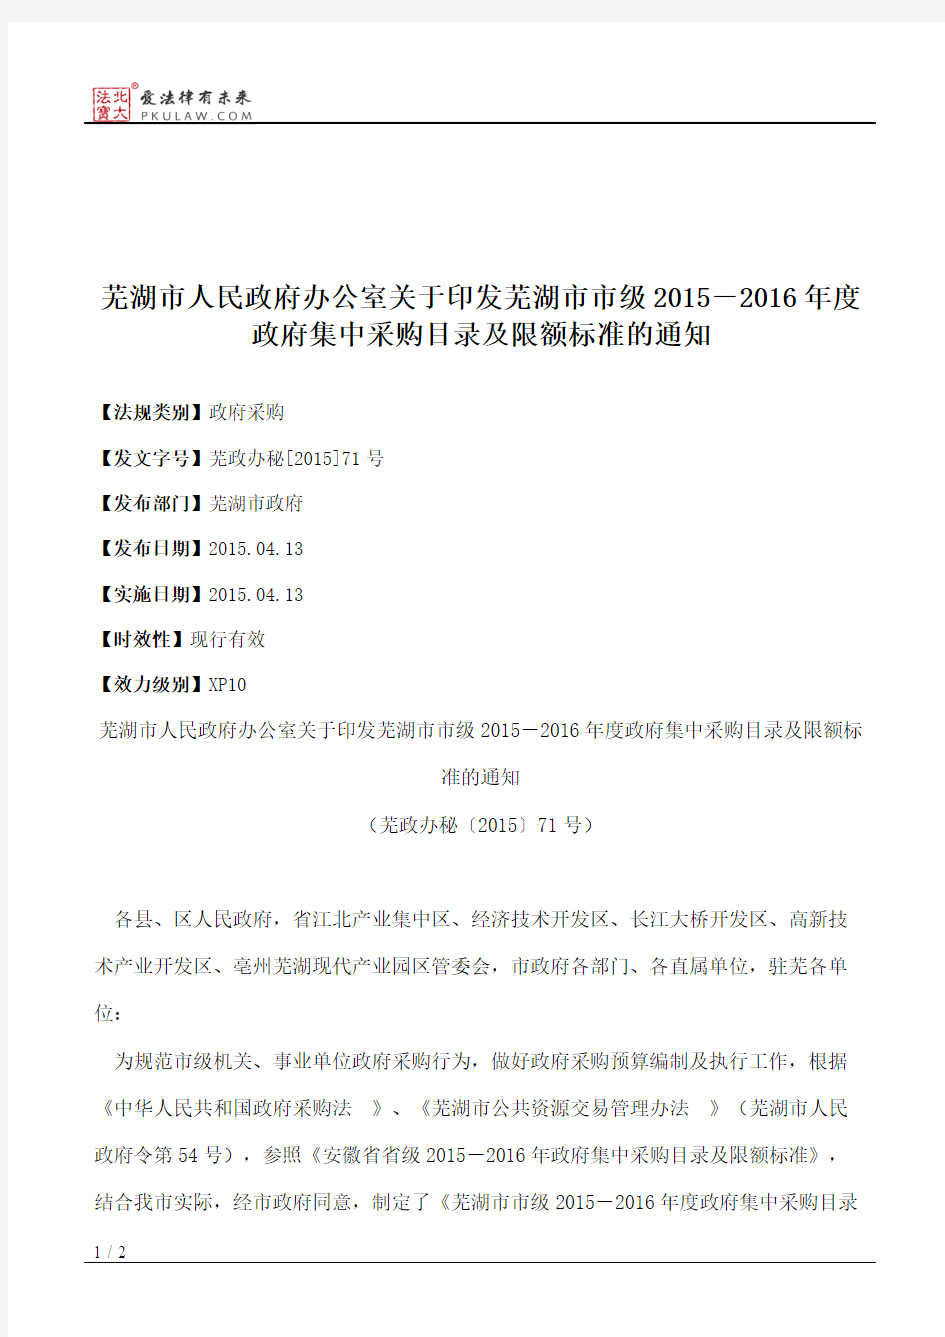 芜湖市人民政府办公室关于印发芜湖市市级2015-2016年度政府集中采